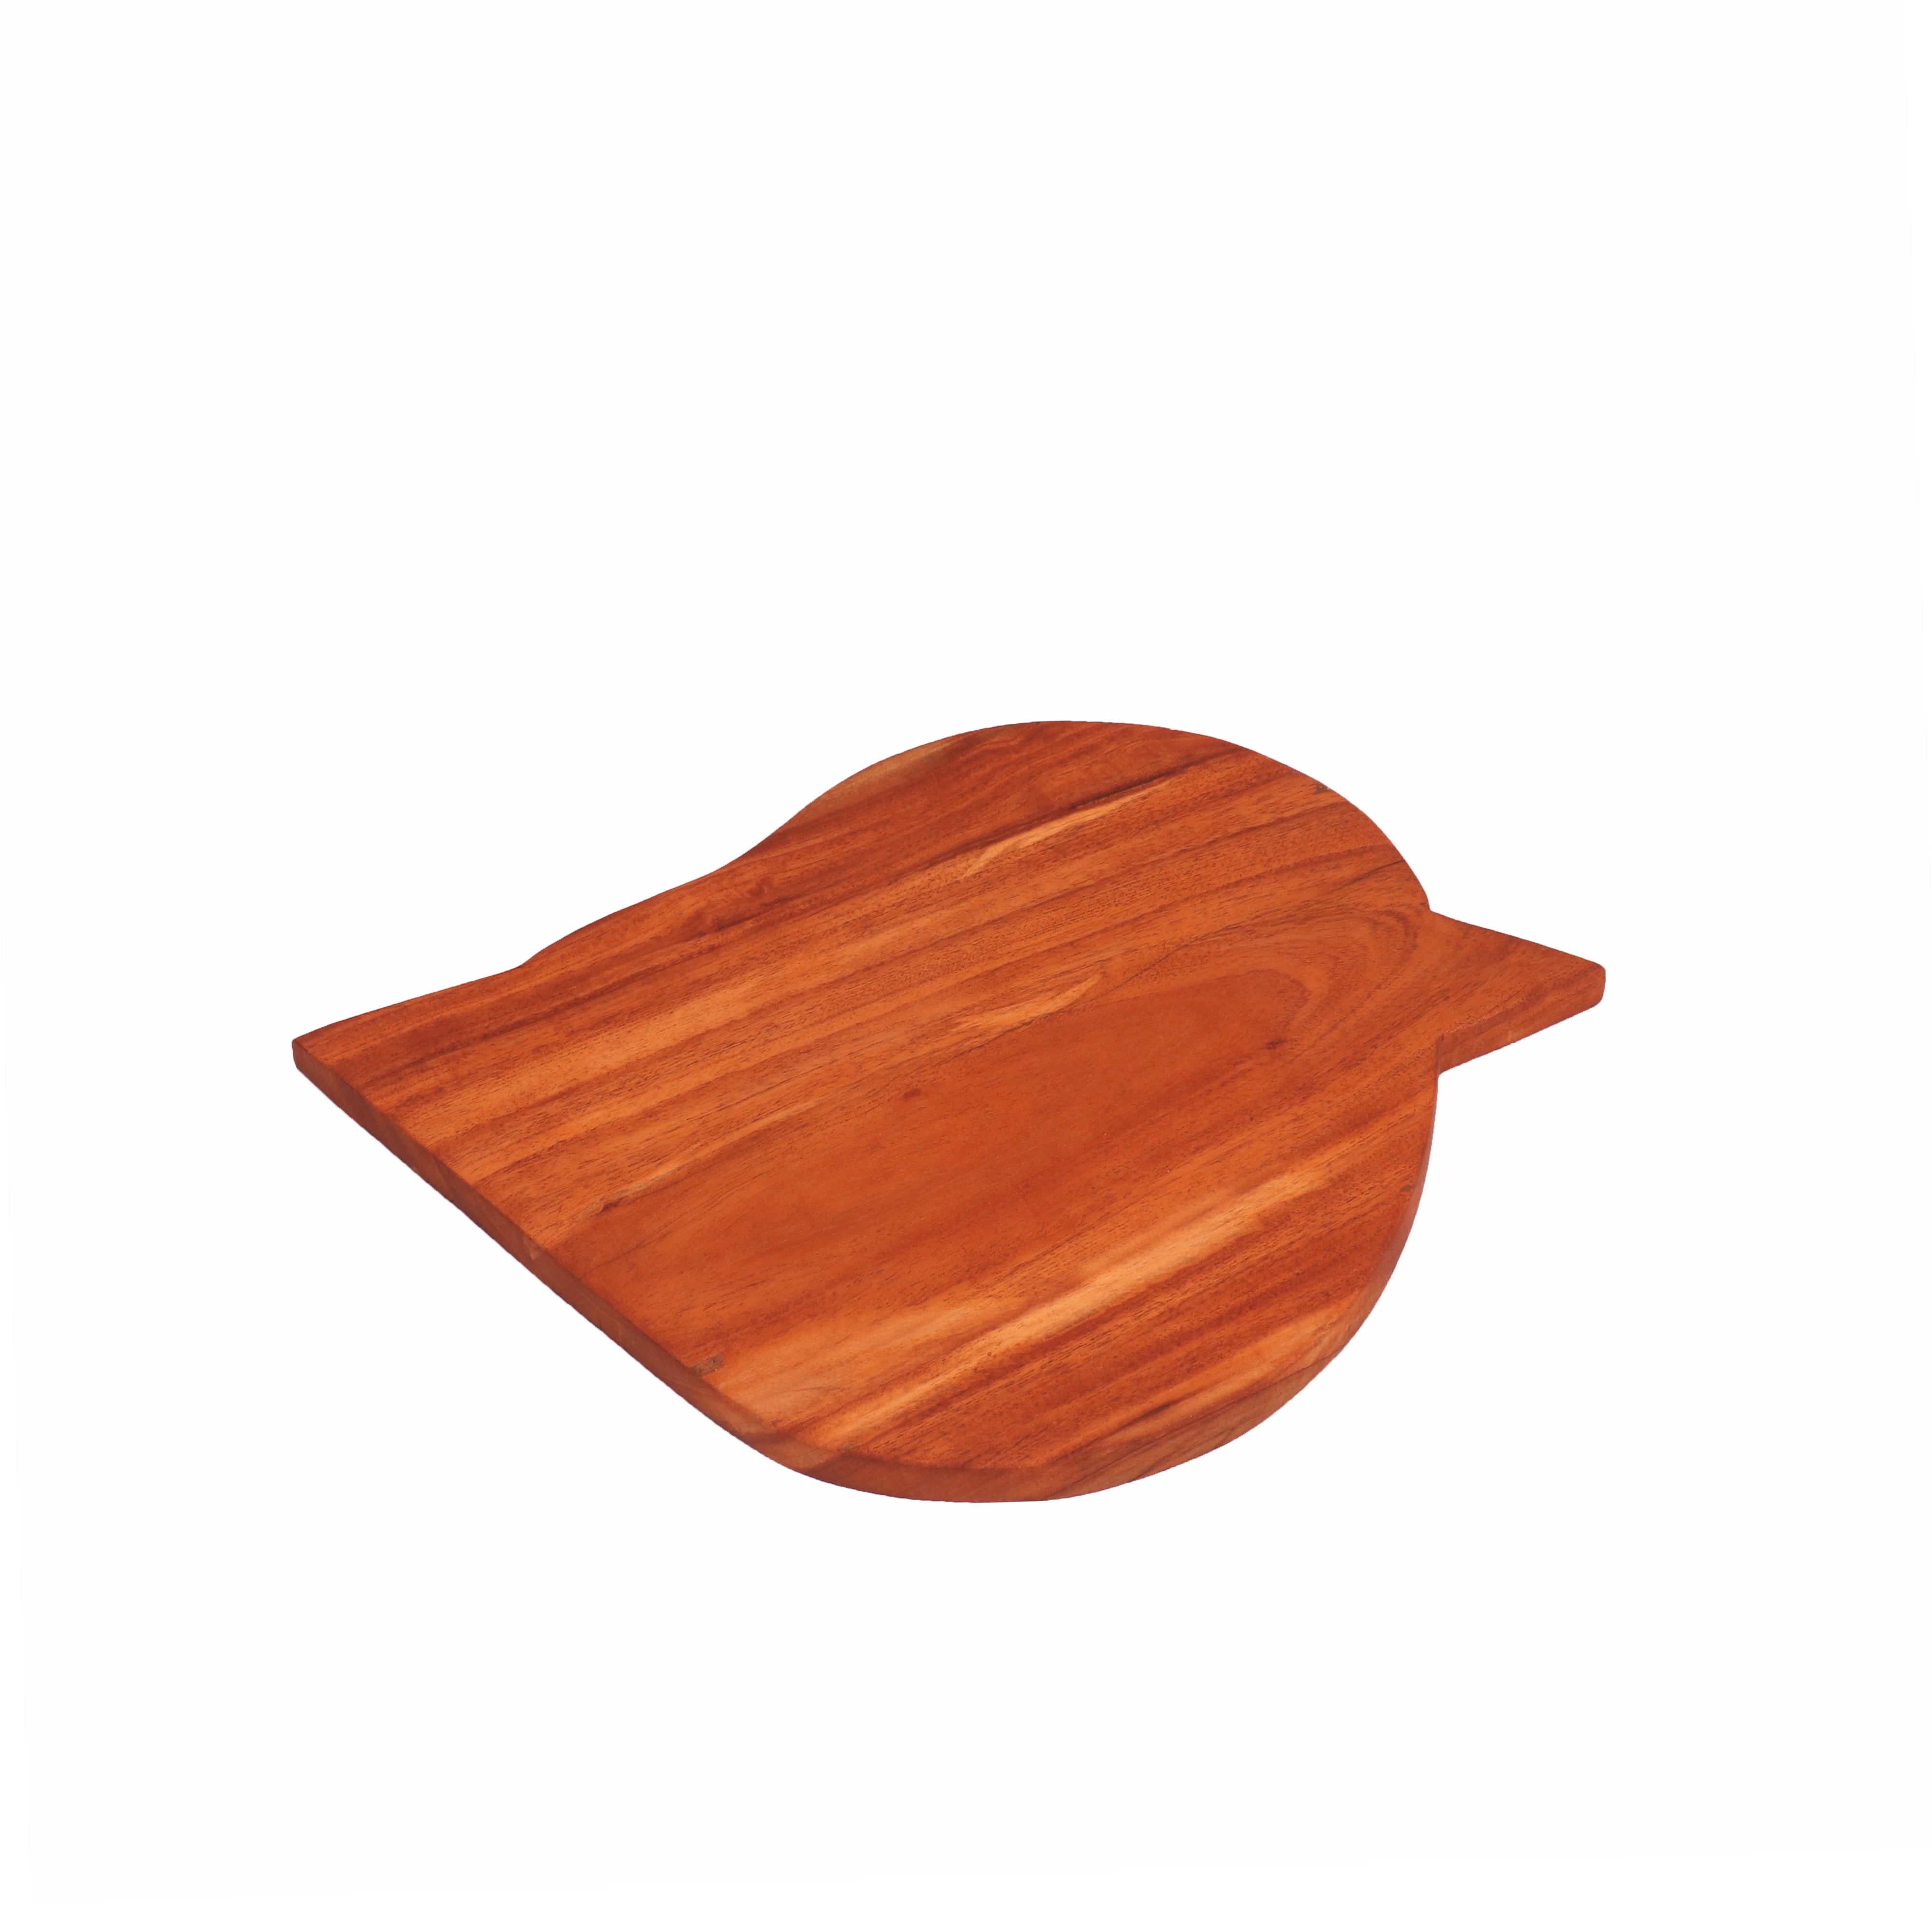 Leaf Shaped Wooden Board Cutting Board